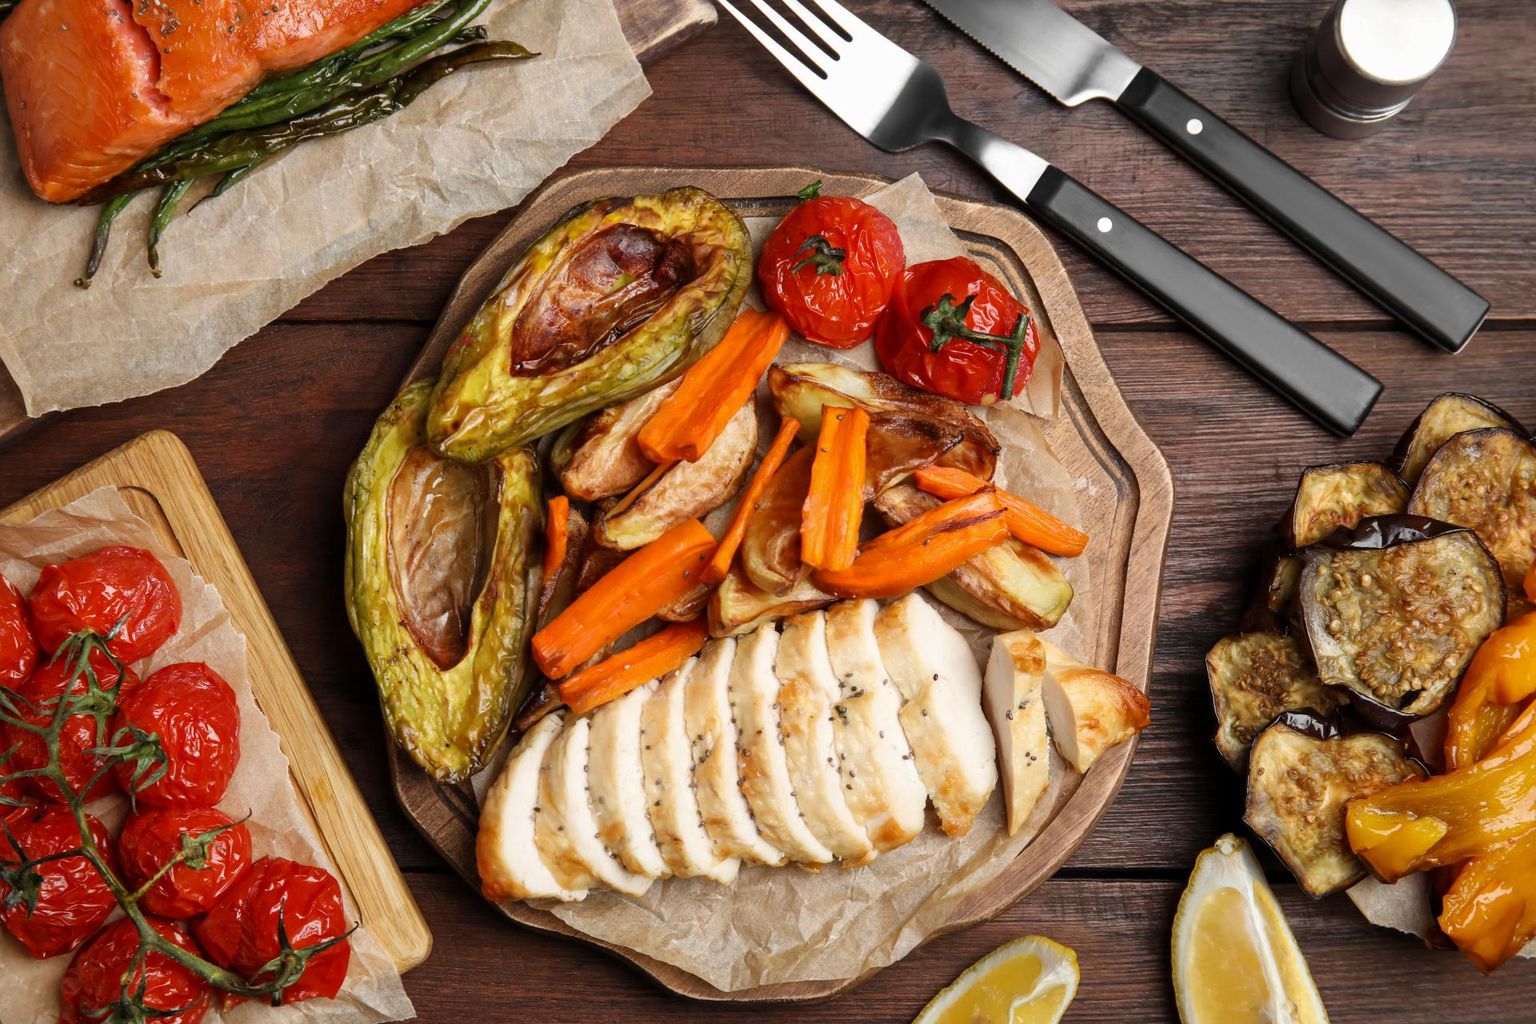 Kuumaõhufritüüris võib küpsetada liha, kala ja köögivilju, rasvavabalt pealegi.